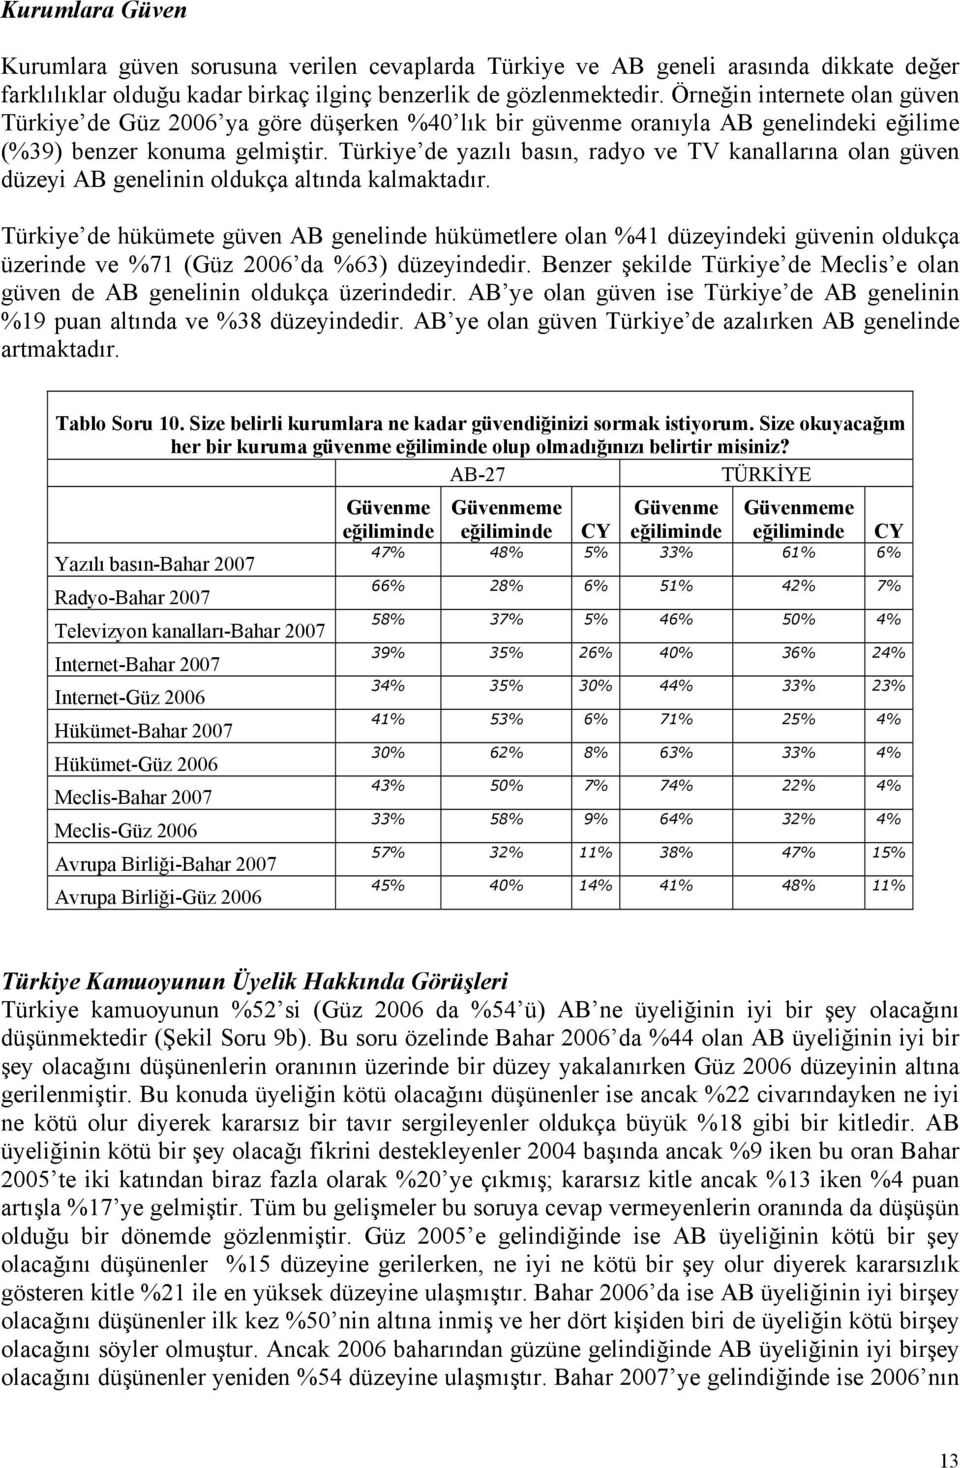 Türkiye de yazılı basın, radyo ve TV kanallarına olan güven düzeyi AB genelinin oldukça altında kalmaktadır.